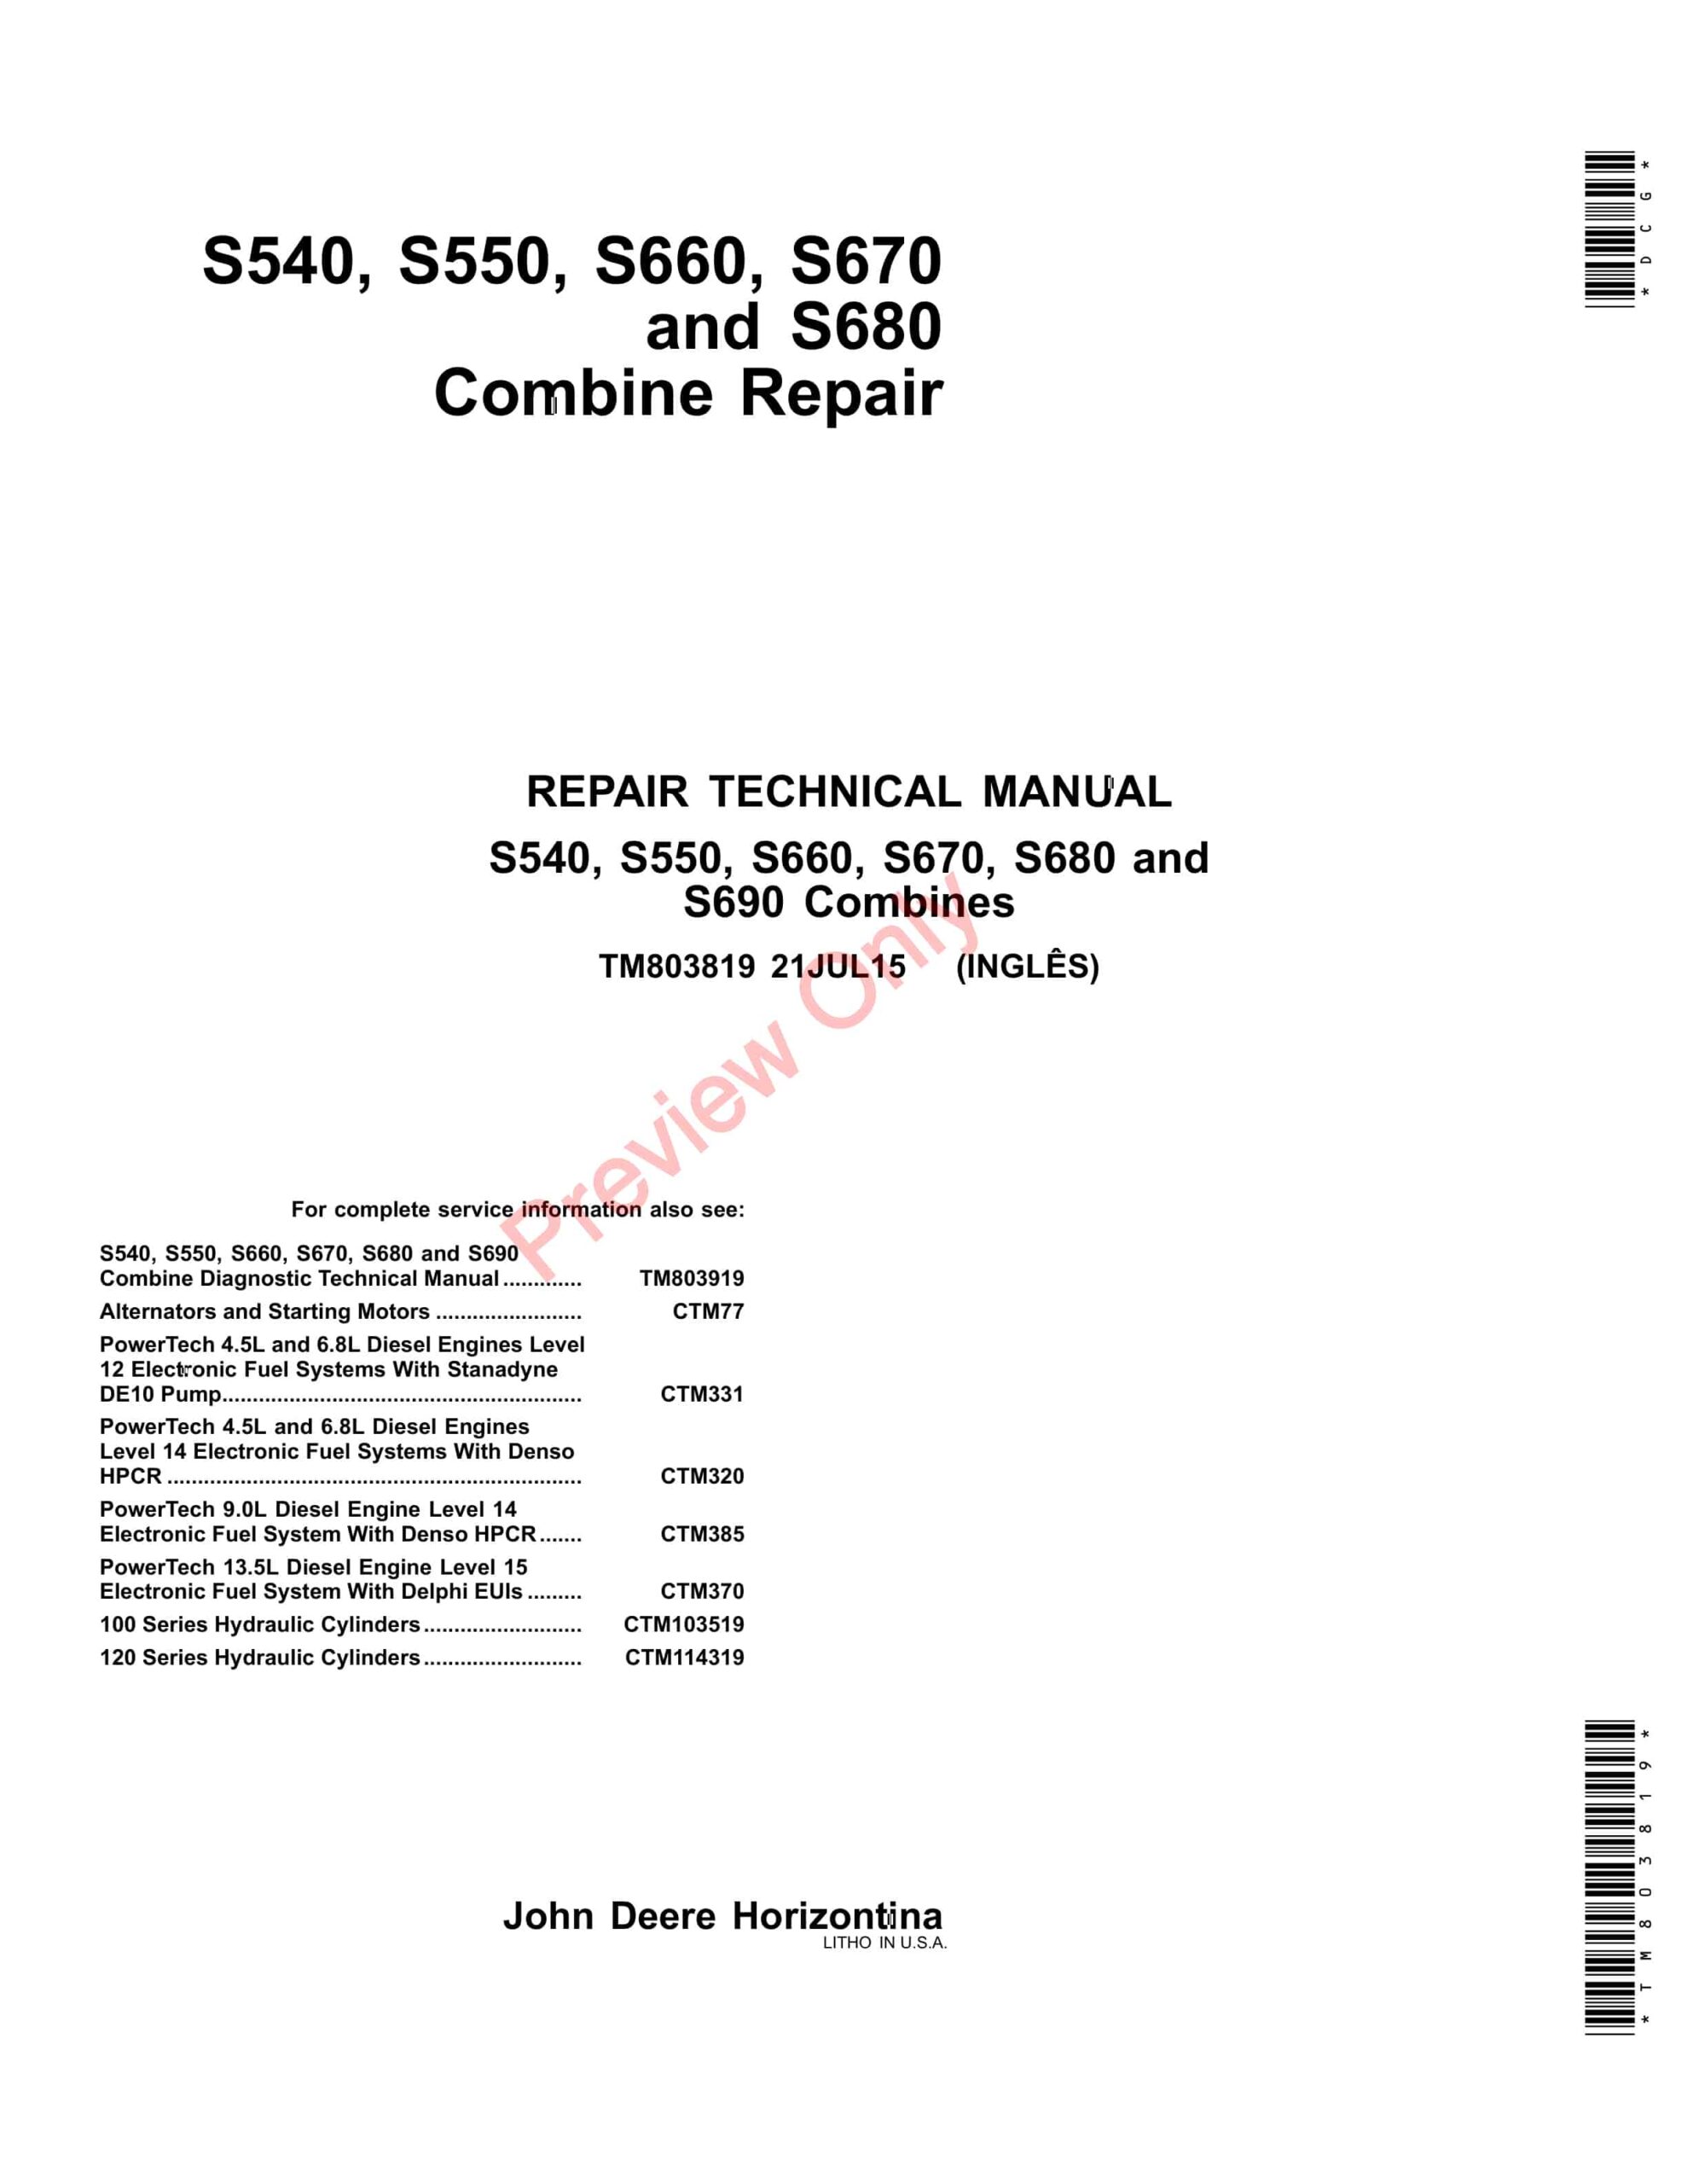 John Deere S540, S550, S660, S670, and S680 Combine Technical Manual TM803819 21JUL15-1